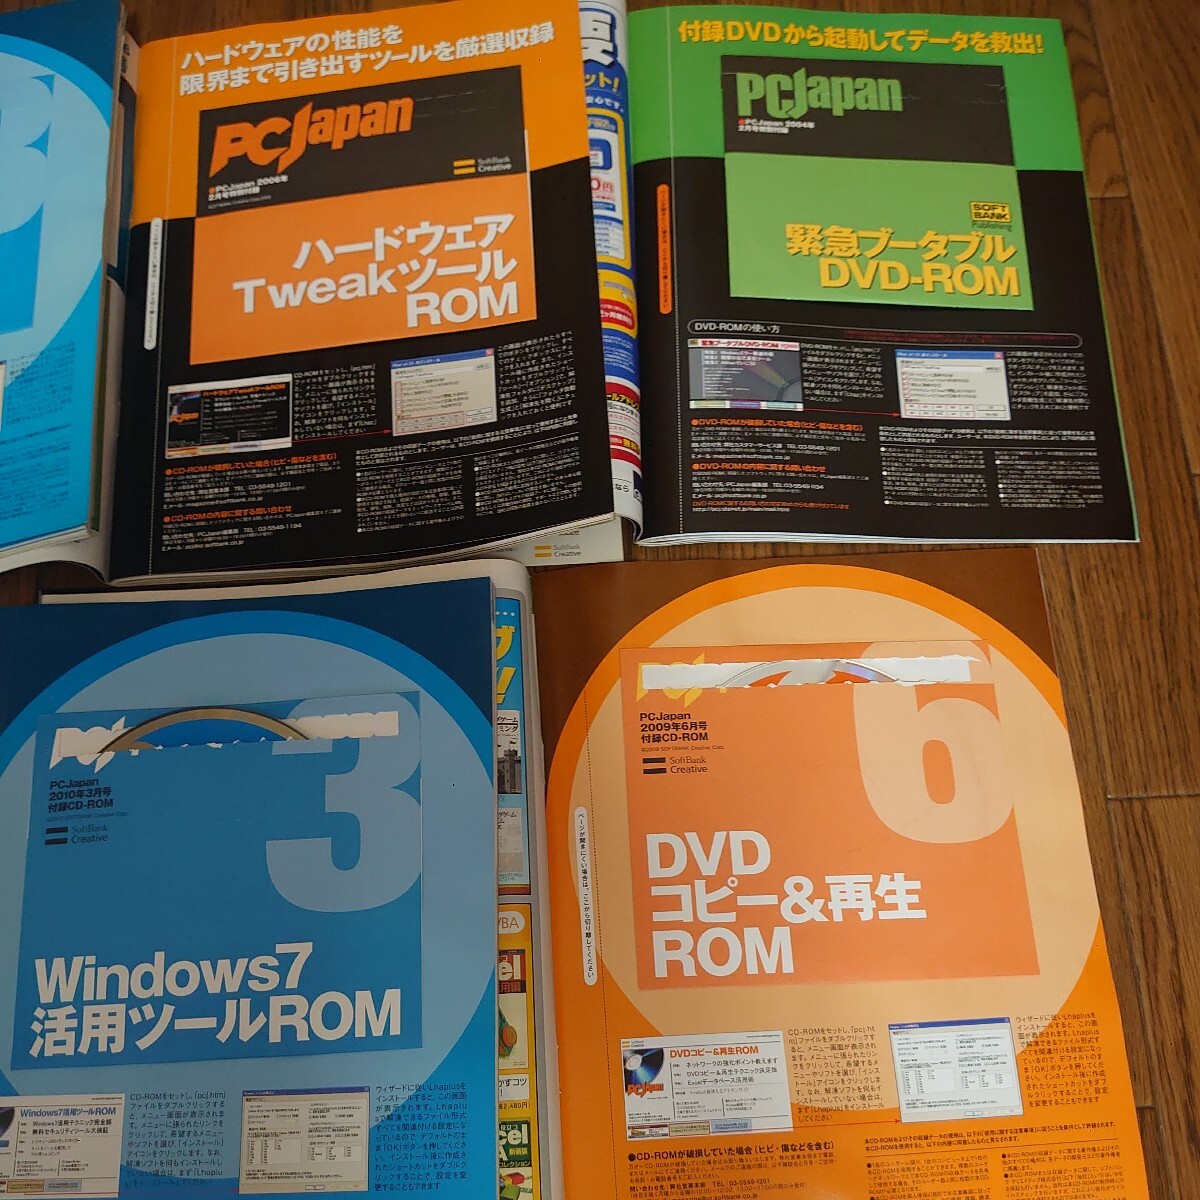  журнал PCJAPAN/PC*GIGA/IP! 11 шт. комплект CD-ROM дополнение имеется! дополнение нераспечатанный 4 шт. есть.